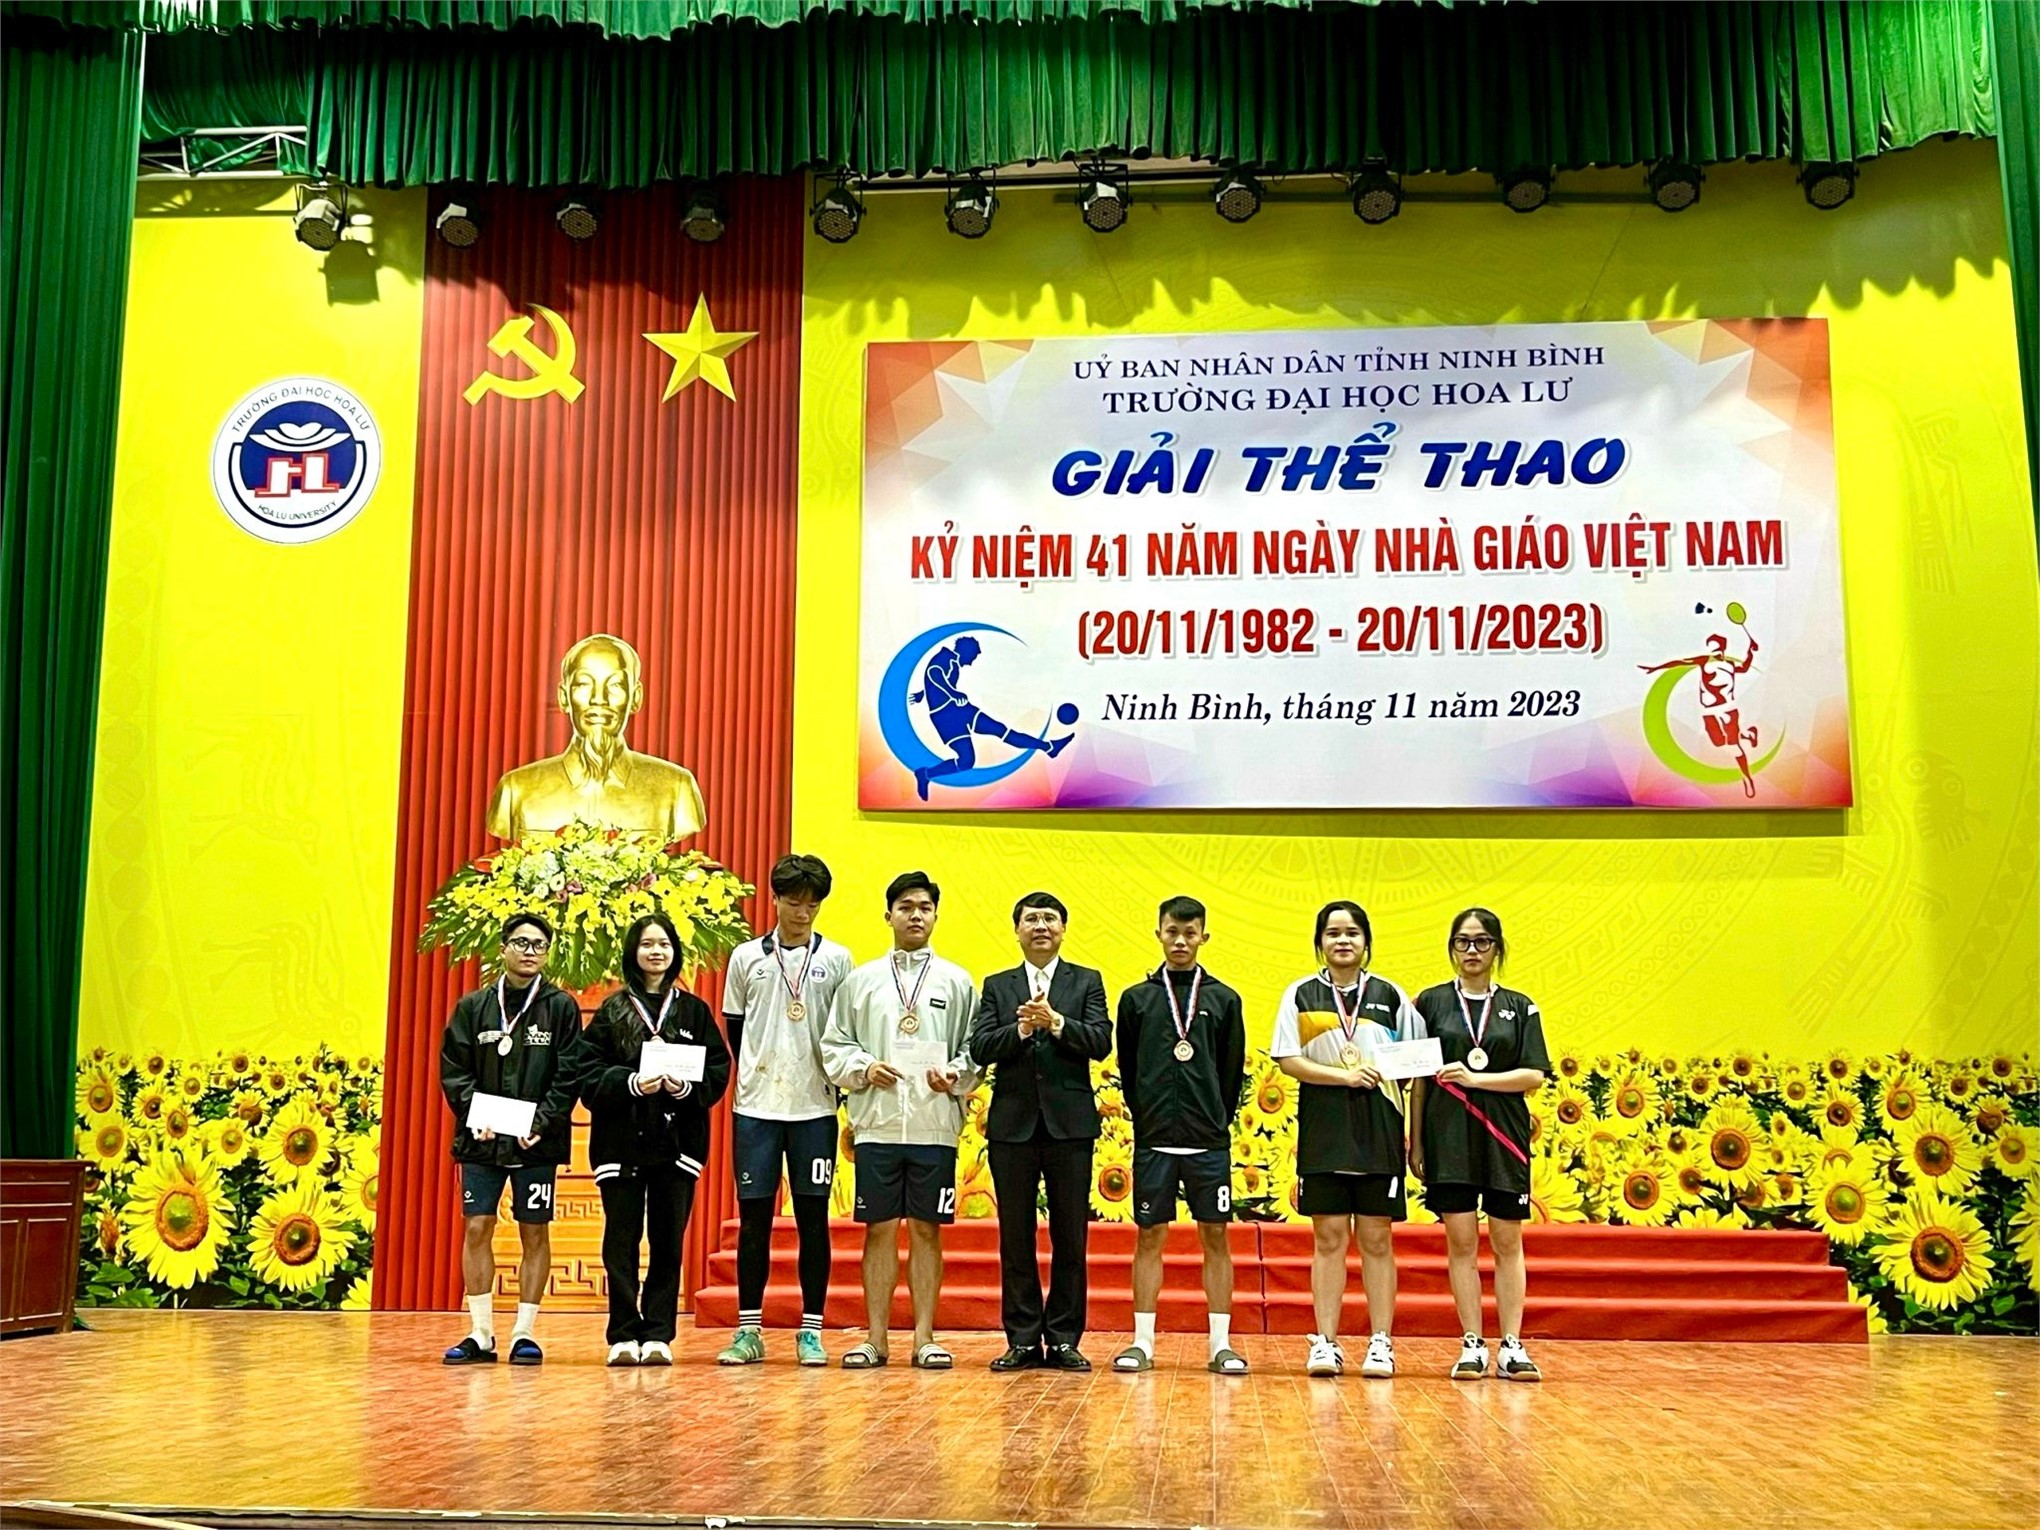 Hội thi đấu thể dục thể thao cán bộ cán bộ giảng viên, nhân viên và sinh viên kỷ niệm 41 năm ngày Nhà giáo Việt Nam 20/11